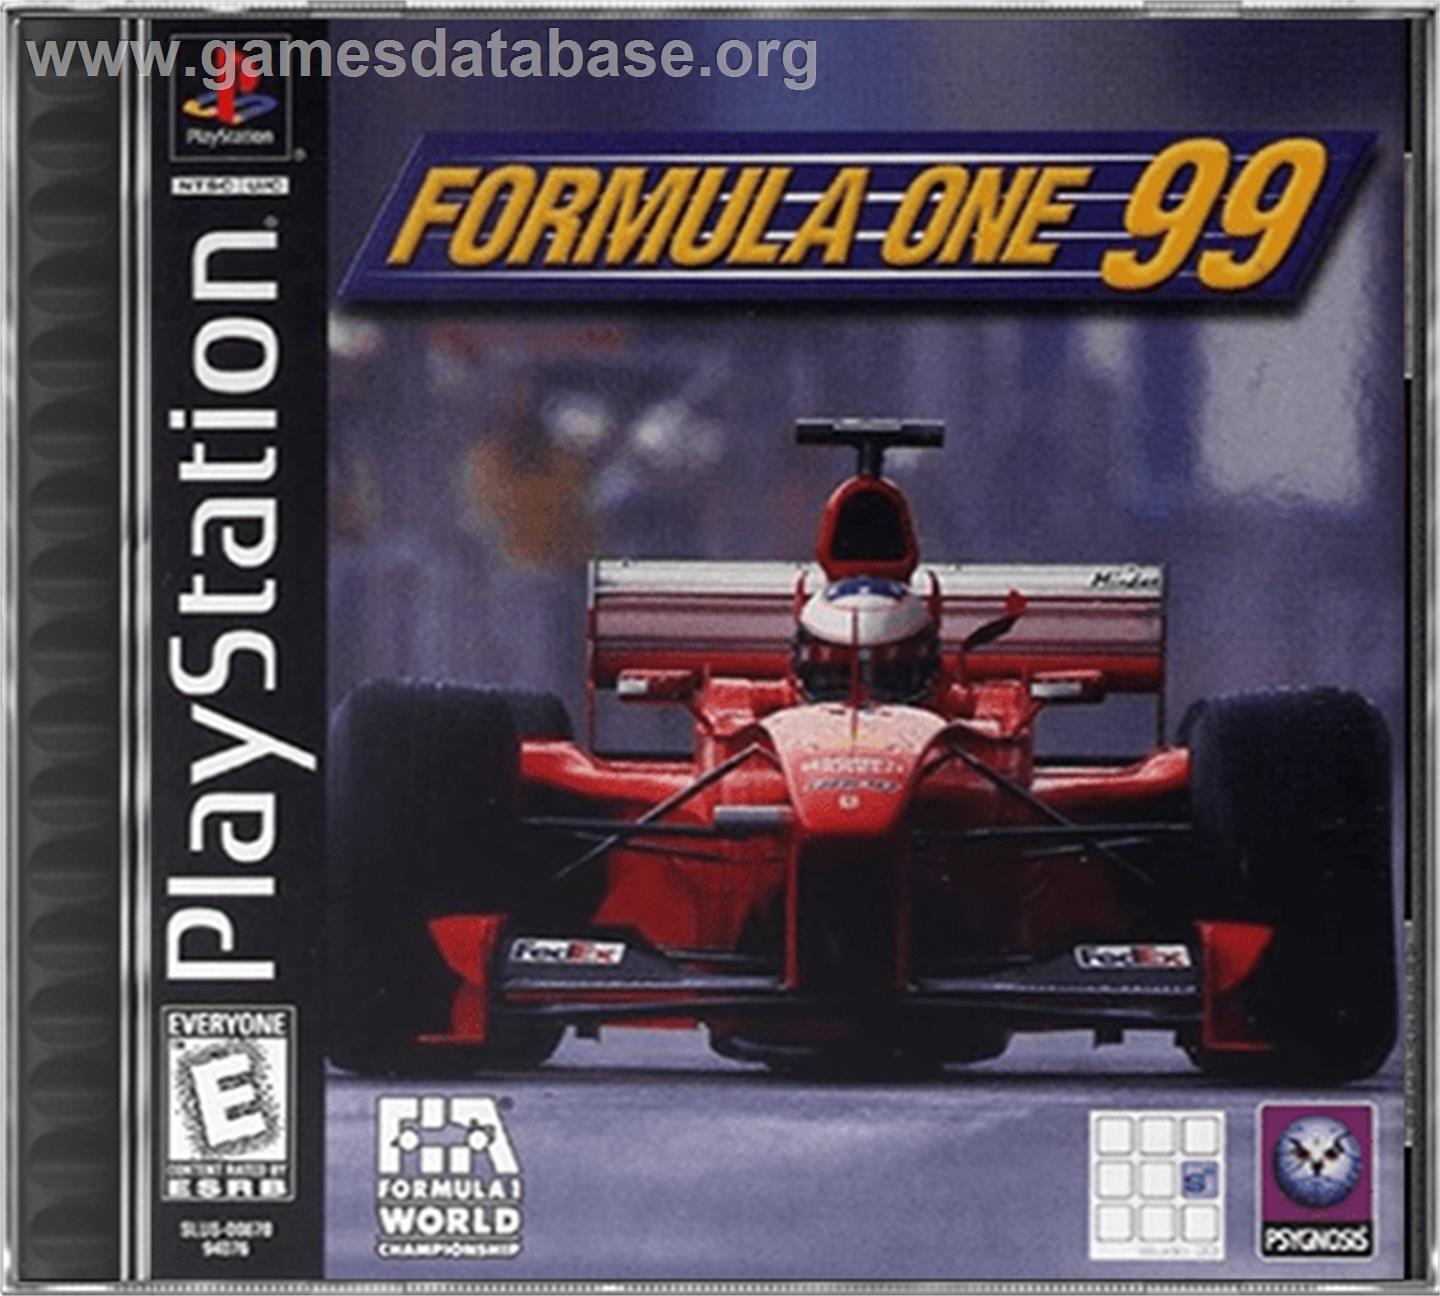 Formula One 99 - Sony Playstation - Artwork - Box